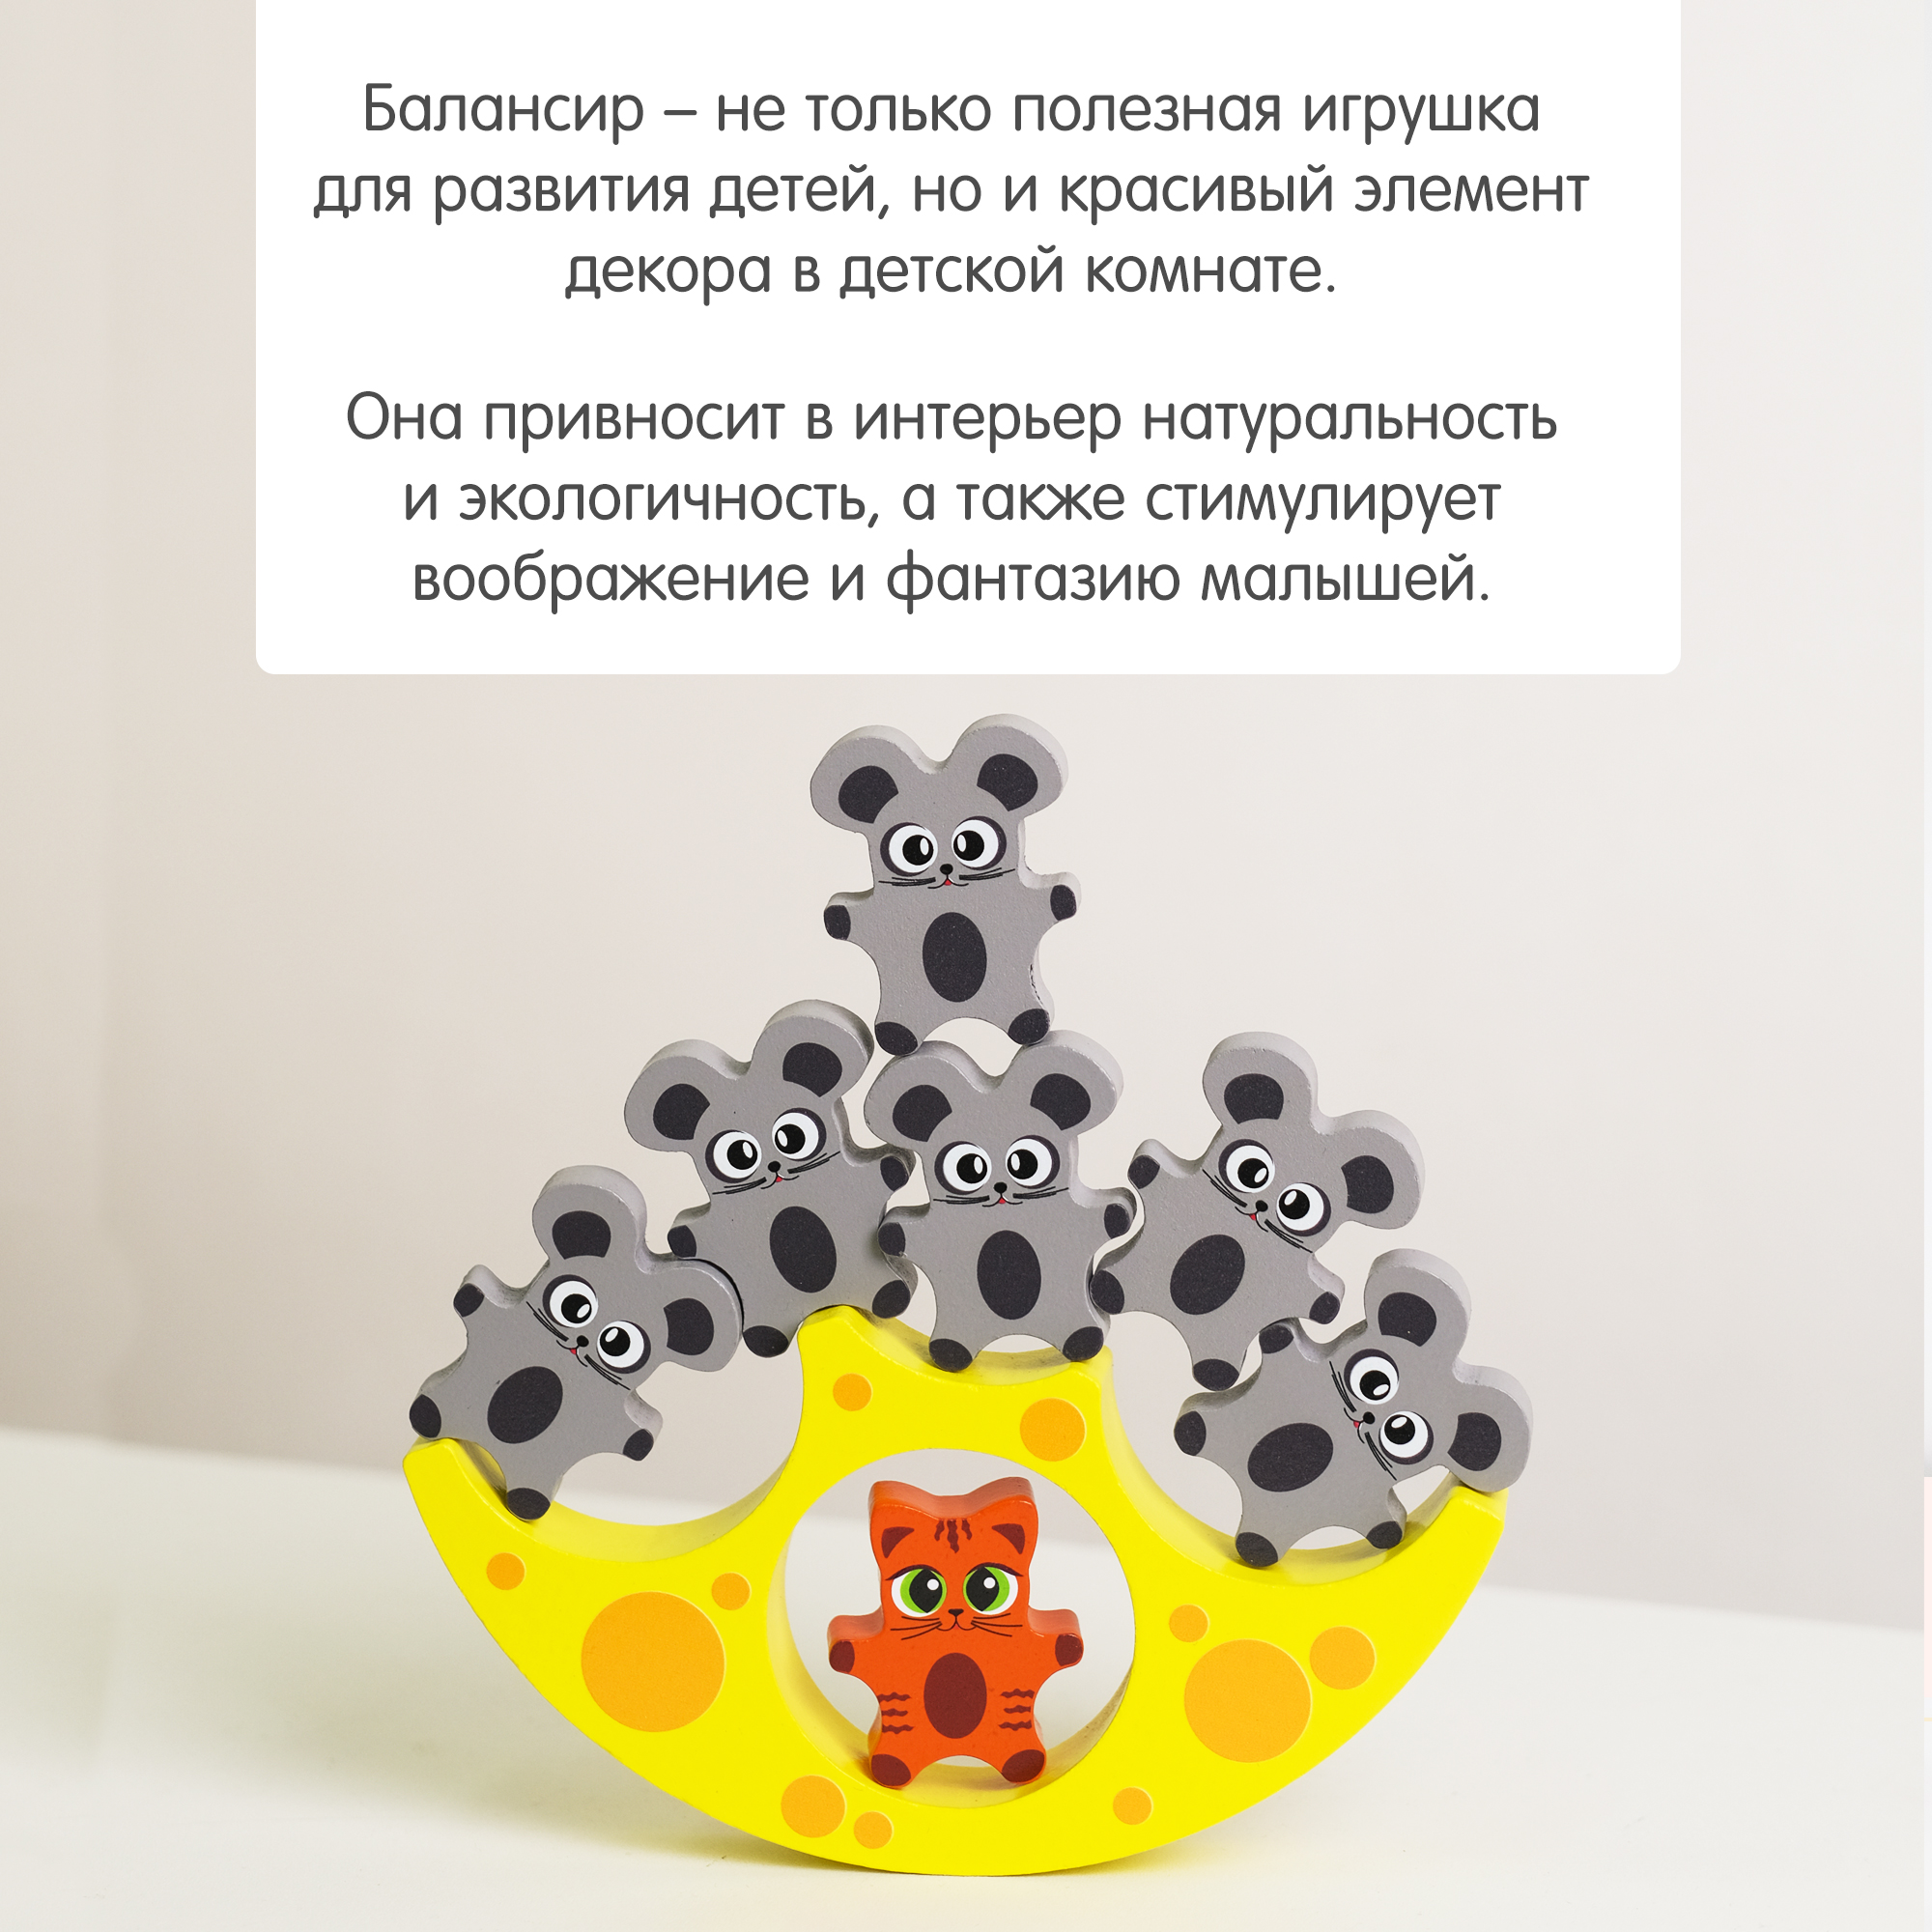 Балансир Кошки-Мышки Alatoys 8 фигурок деревянная развивающая игра - фото 9